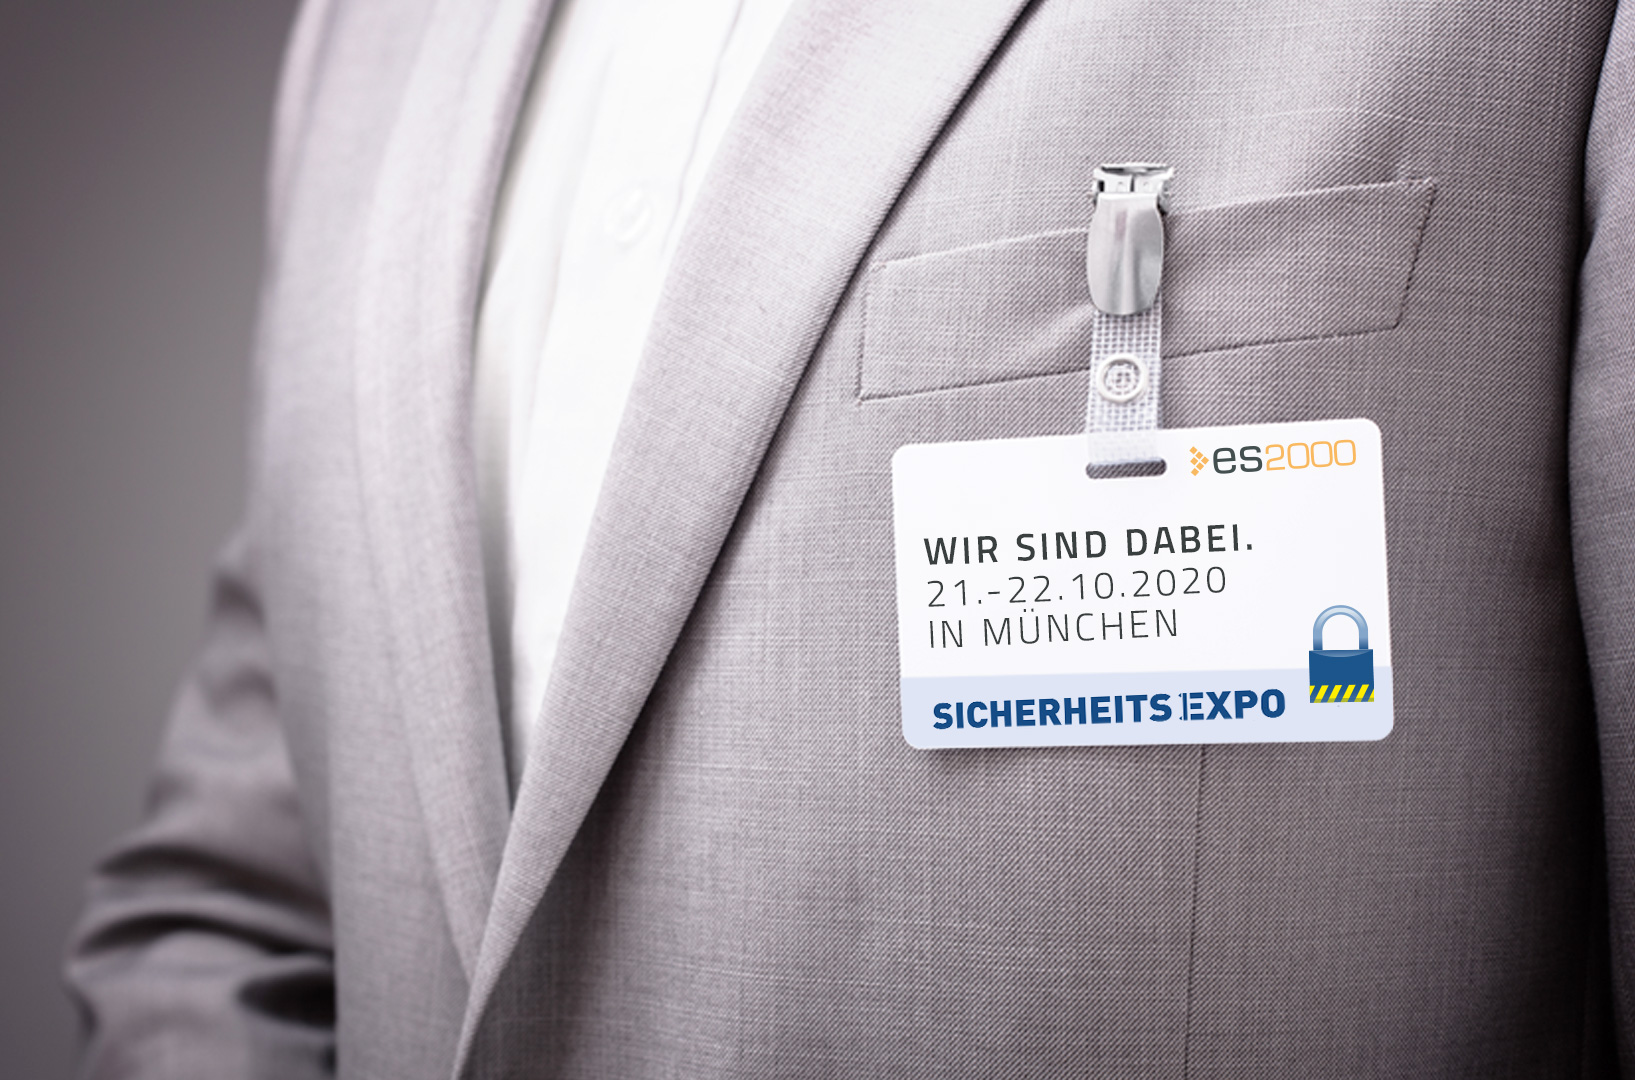 Die SicherheitsExpo hat sich zur führenden Fachmesse für Sicherheit in Süddeutschland entwickelt und soll im Oktober 2020 stattfinden.